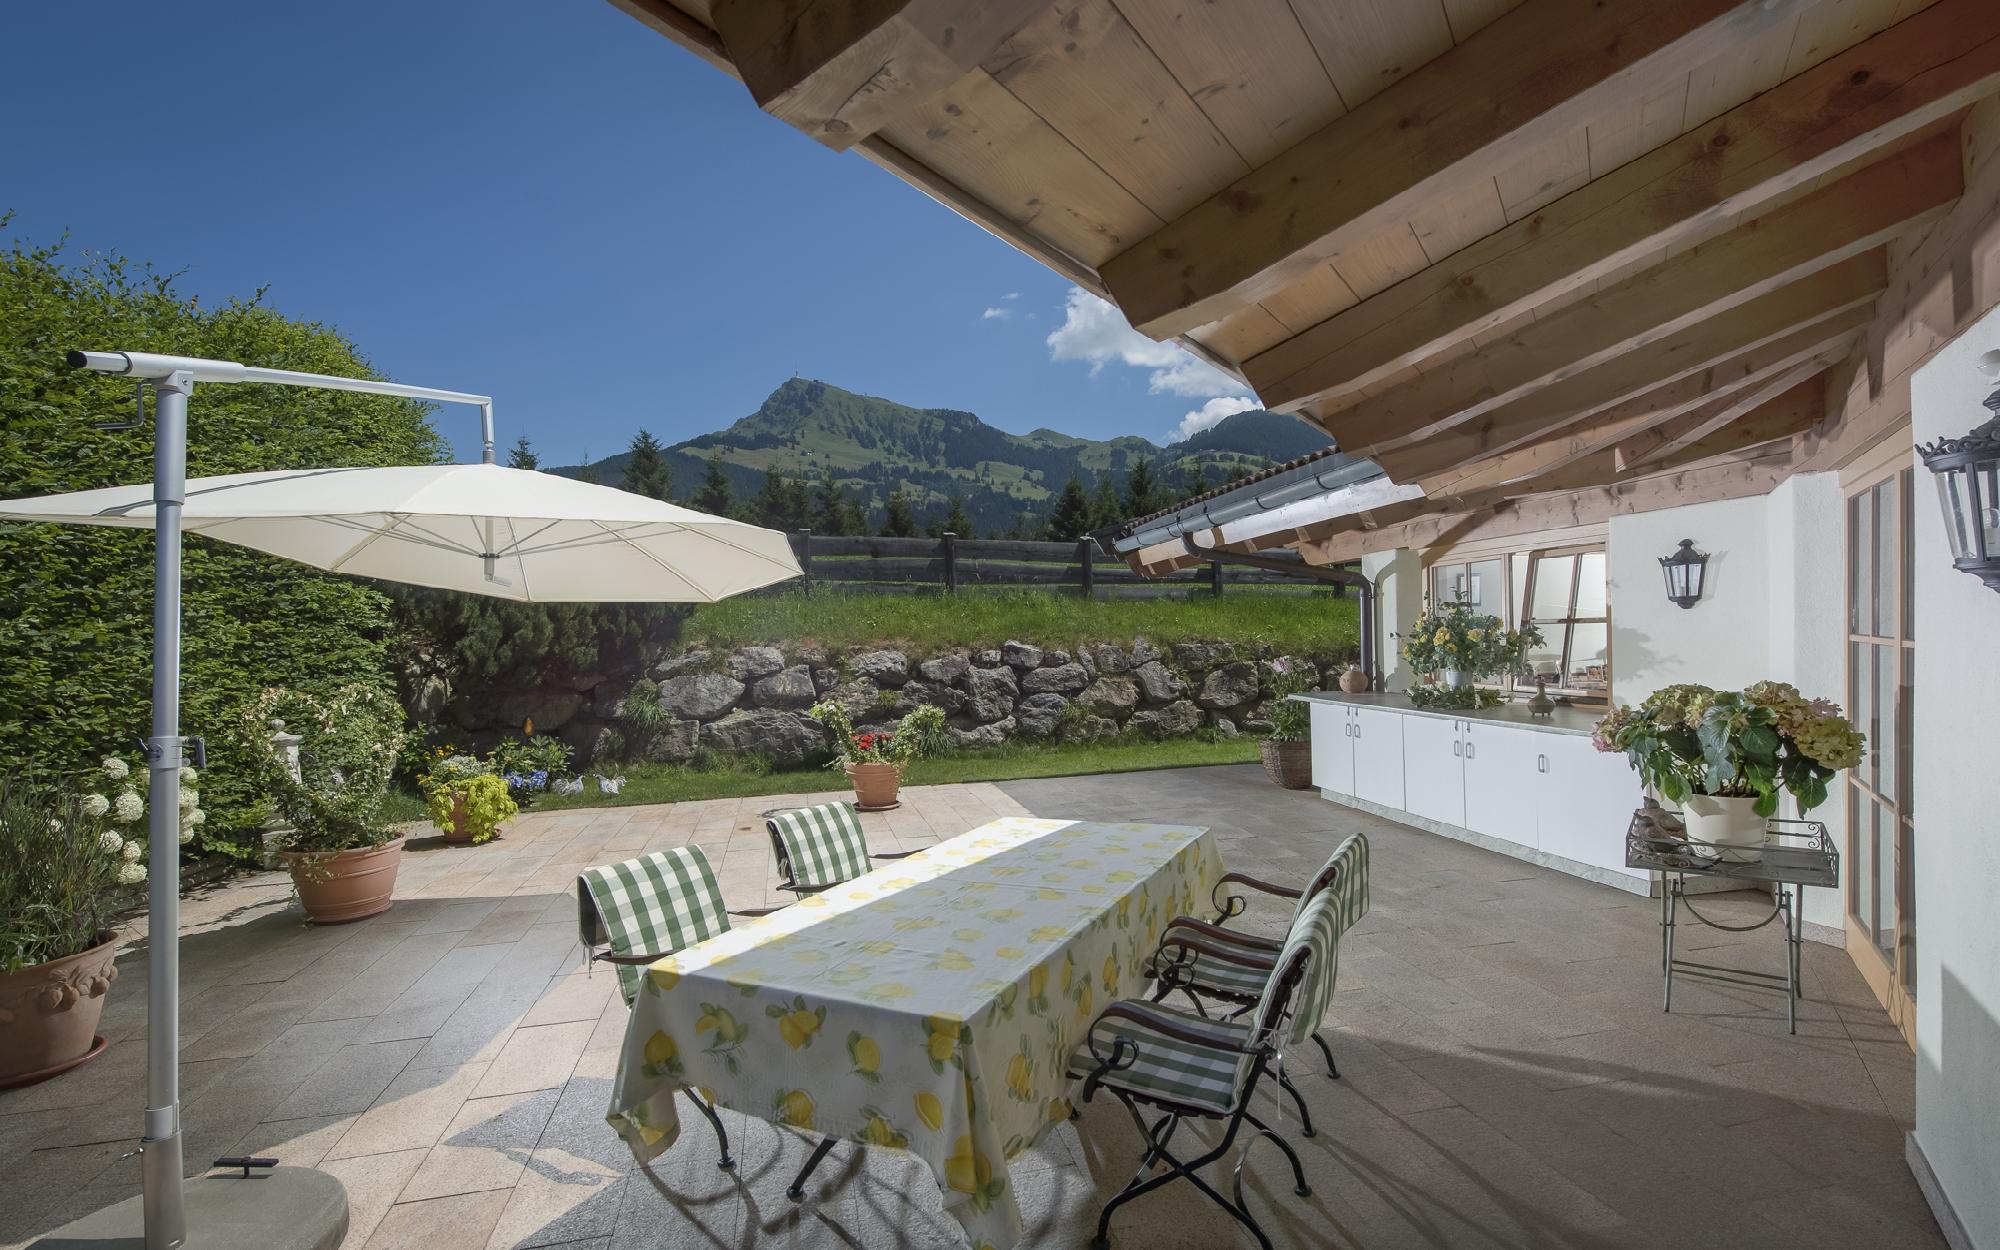 Immobilien - Villa in bester Lage im Wohngebiet von Kitzbühel, Kitzbuehel